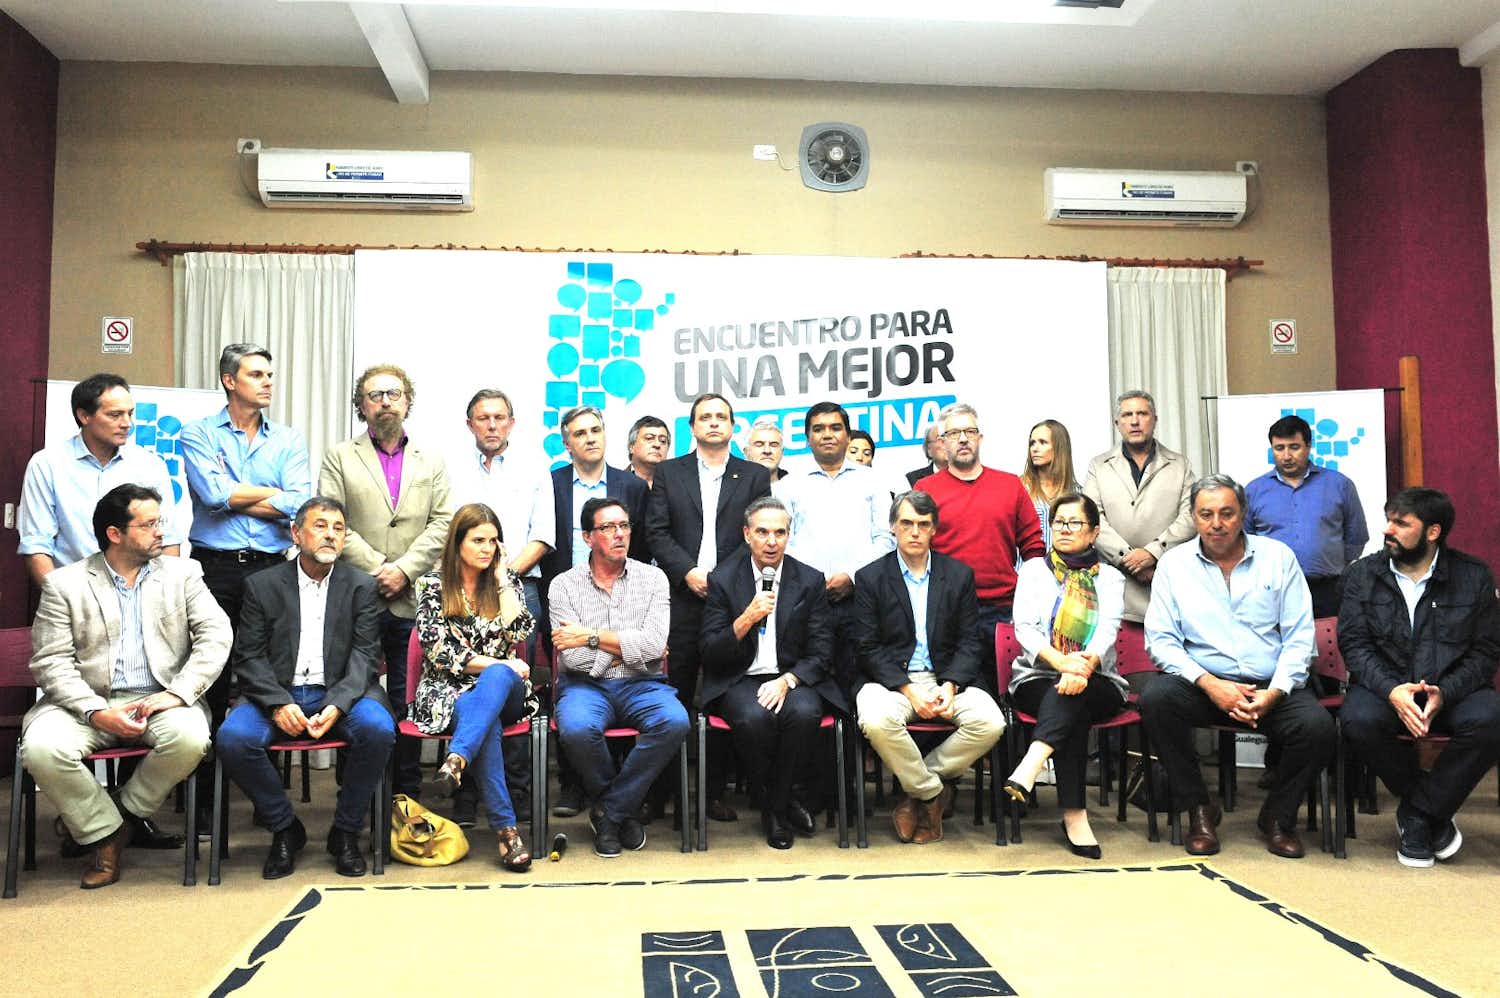  El Peronismo Federal quiere ser “una nueva oposición de cara al 2019”